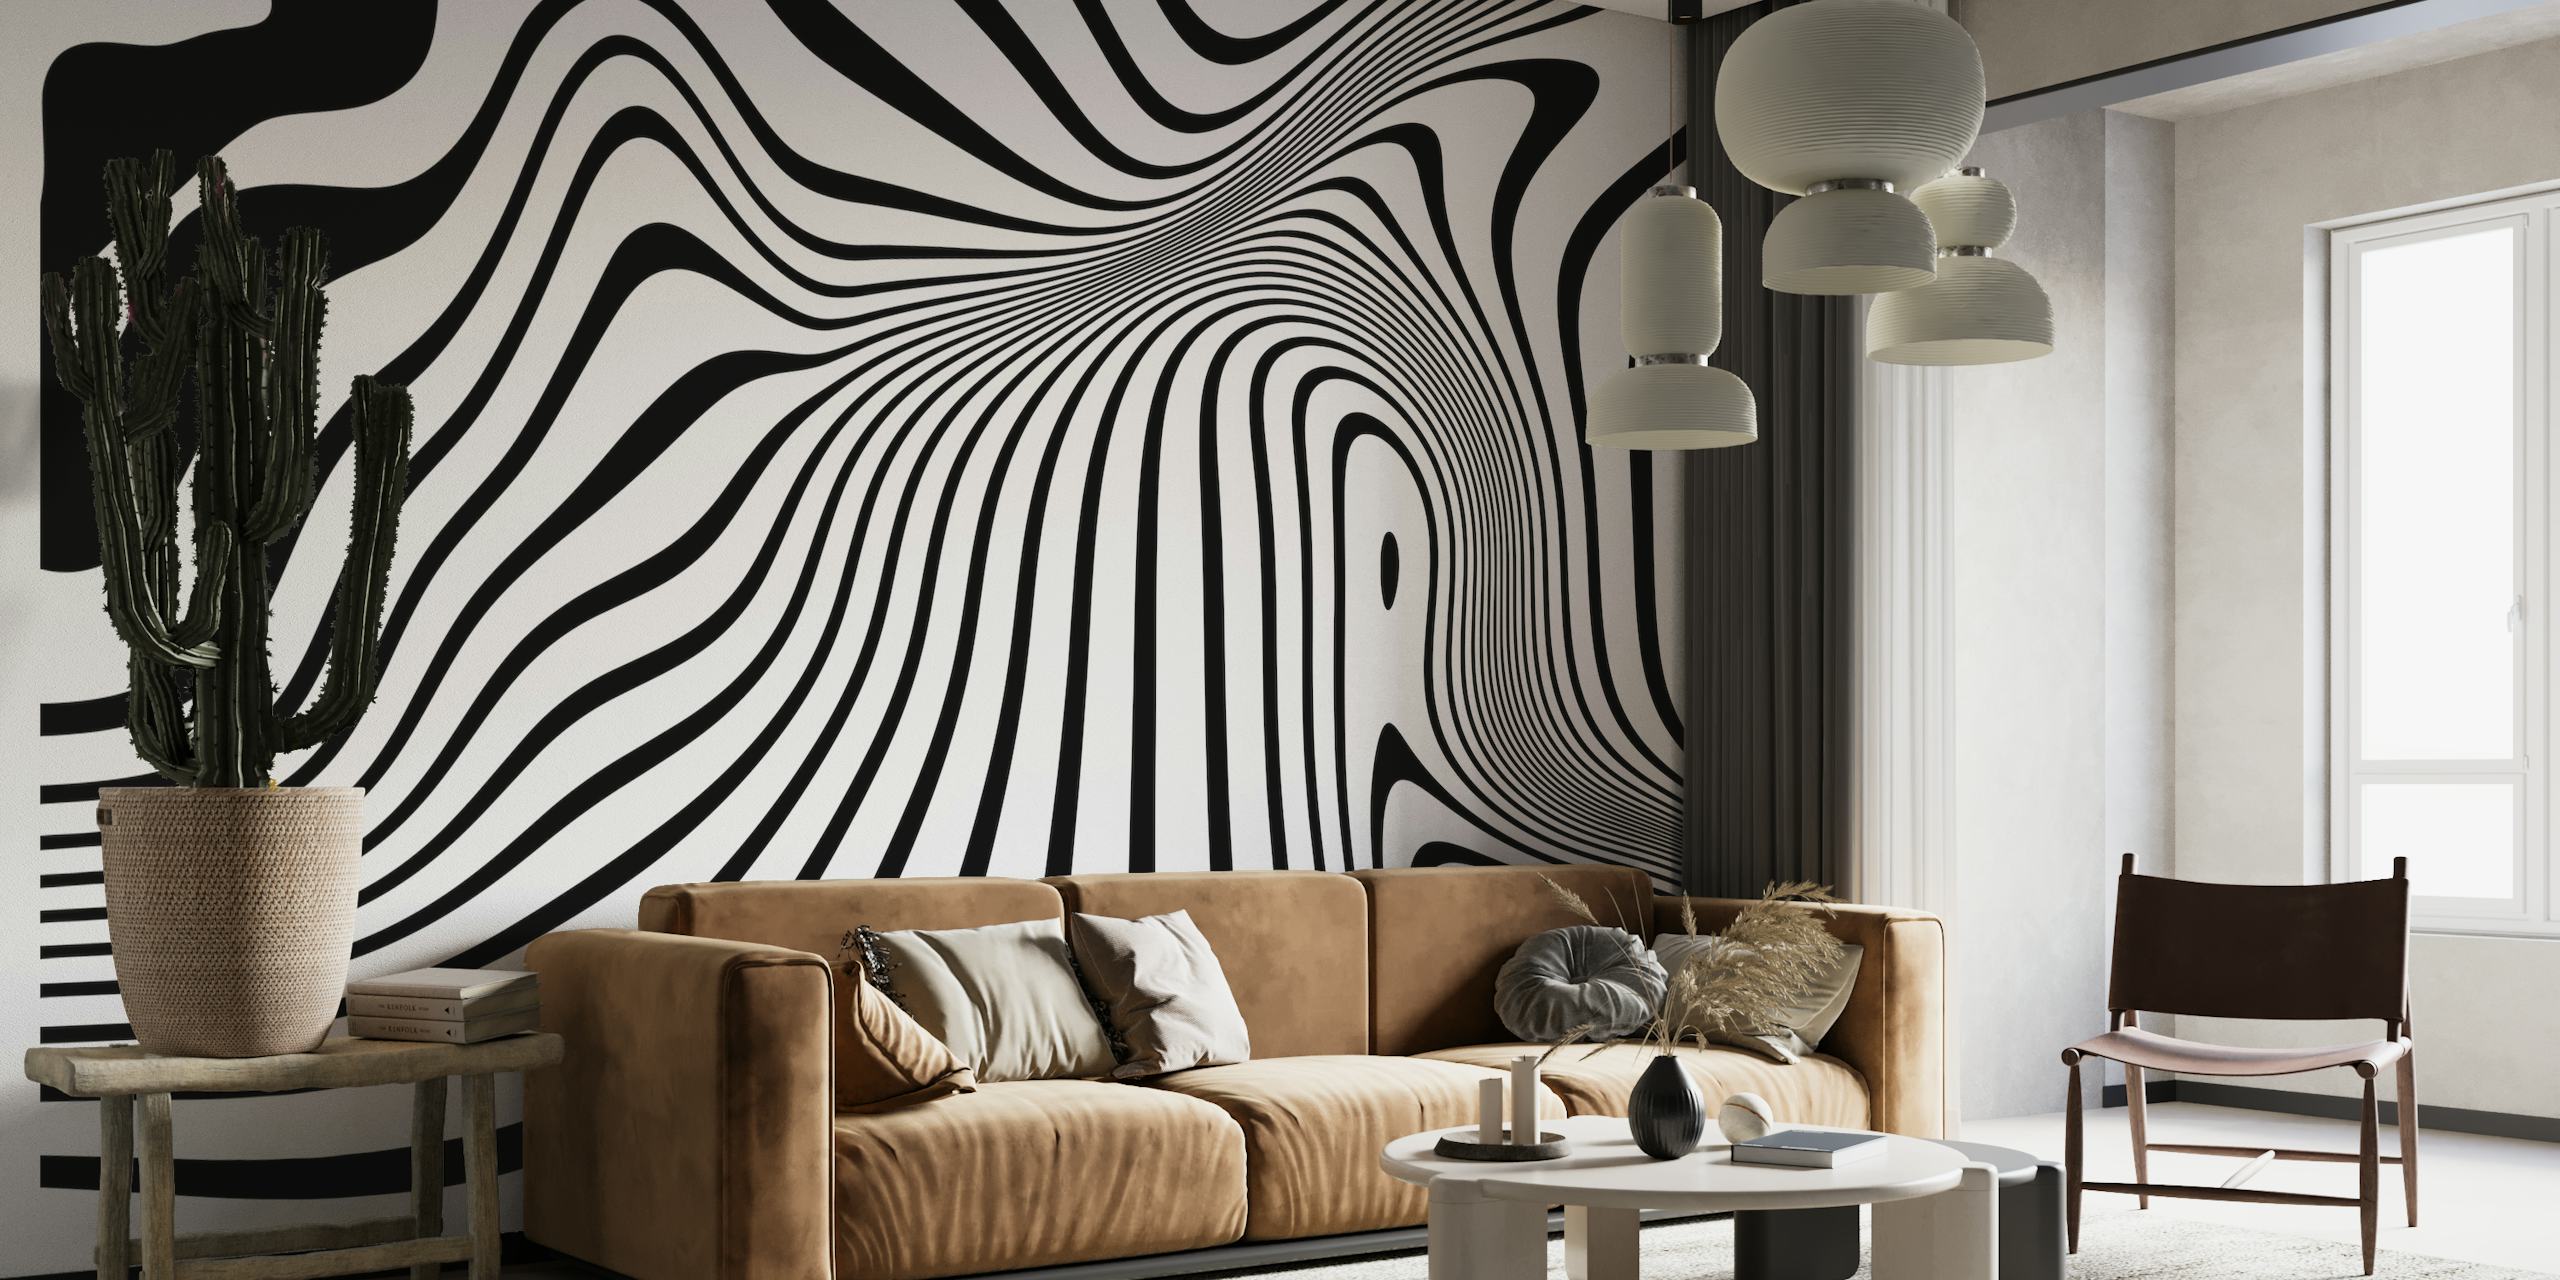 Mural de pared en blanco y negro con arte lineal abstracto y formas orgánicas y fluidas que crean una textura visual dinámica